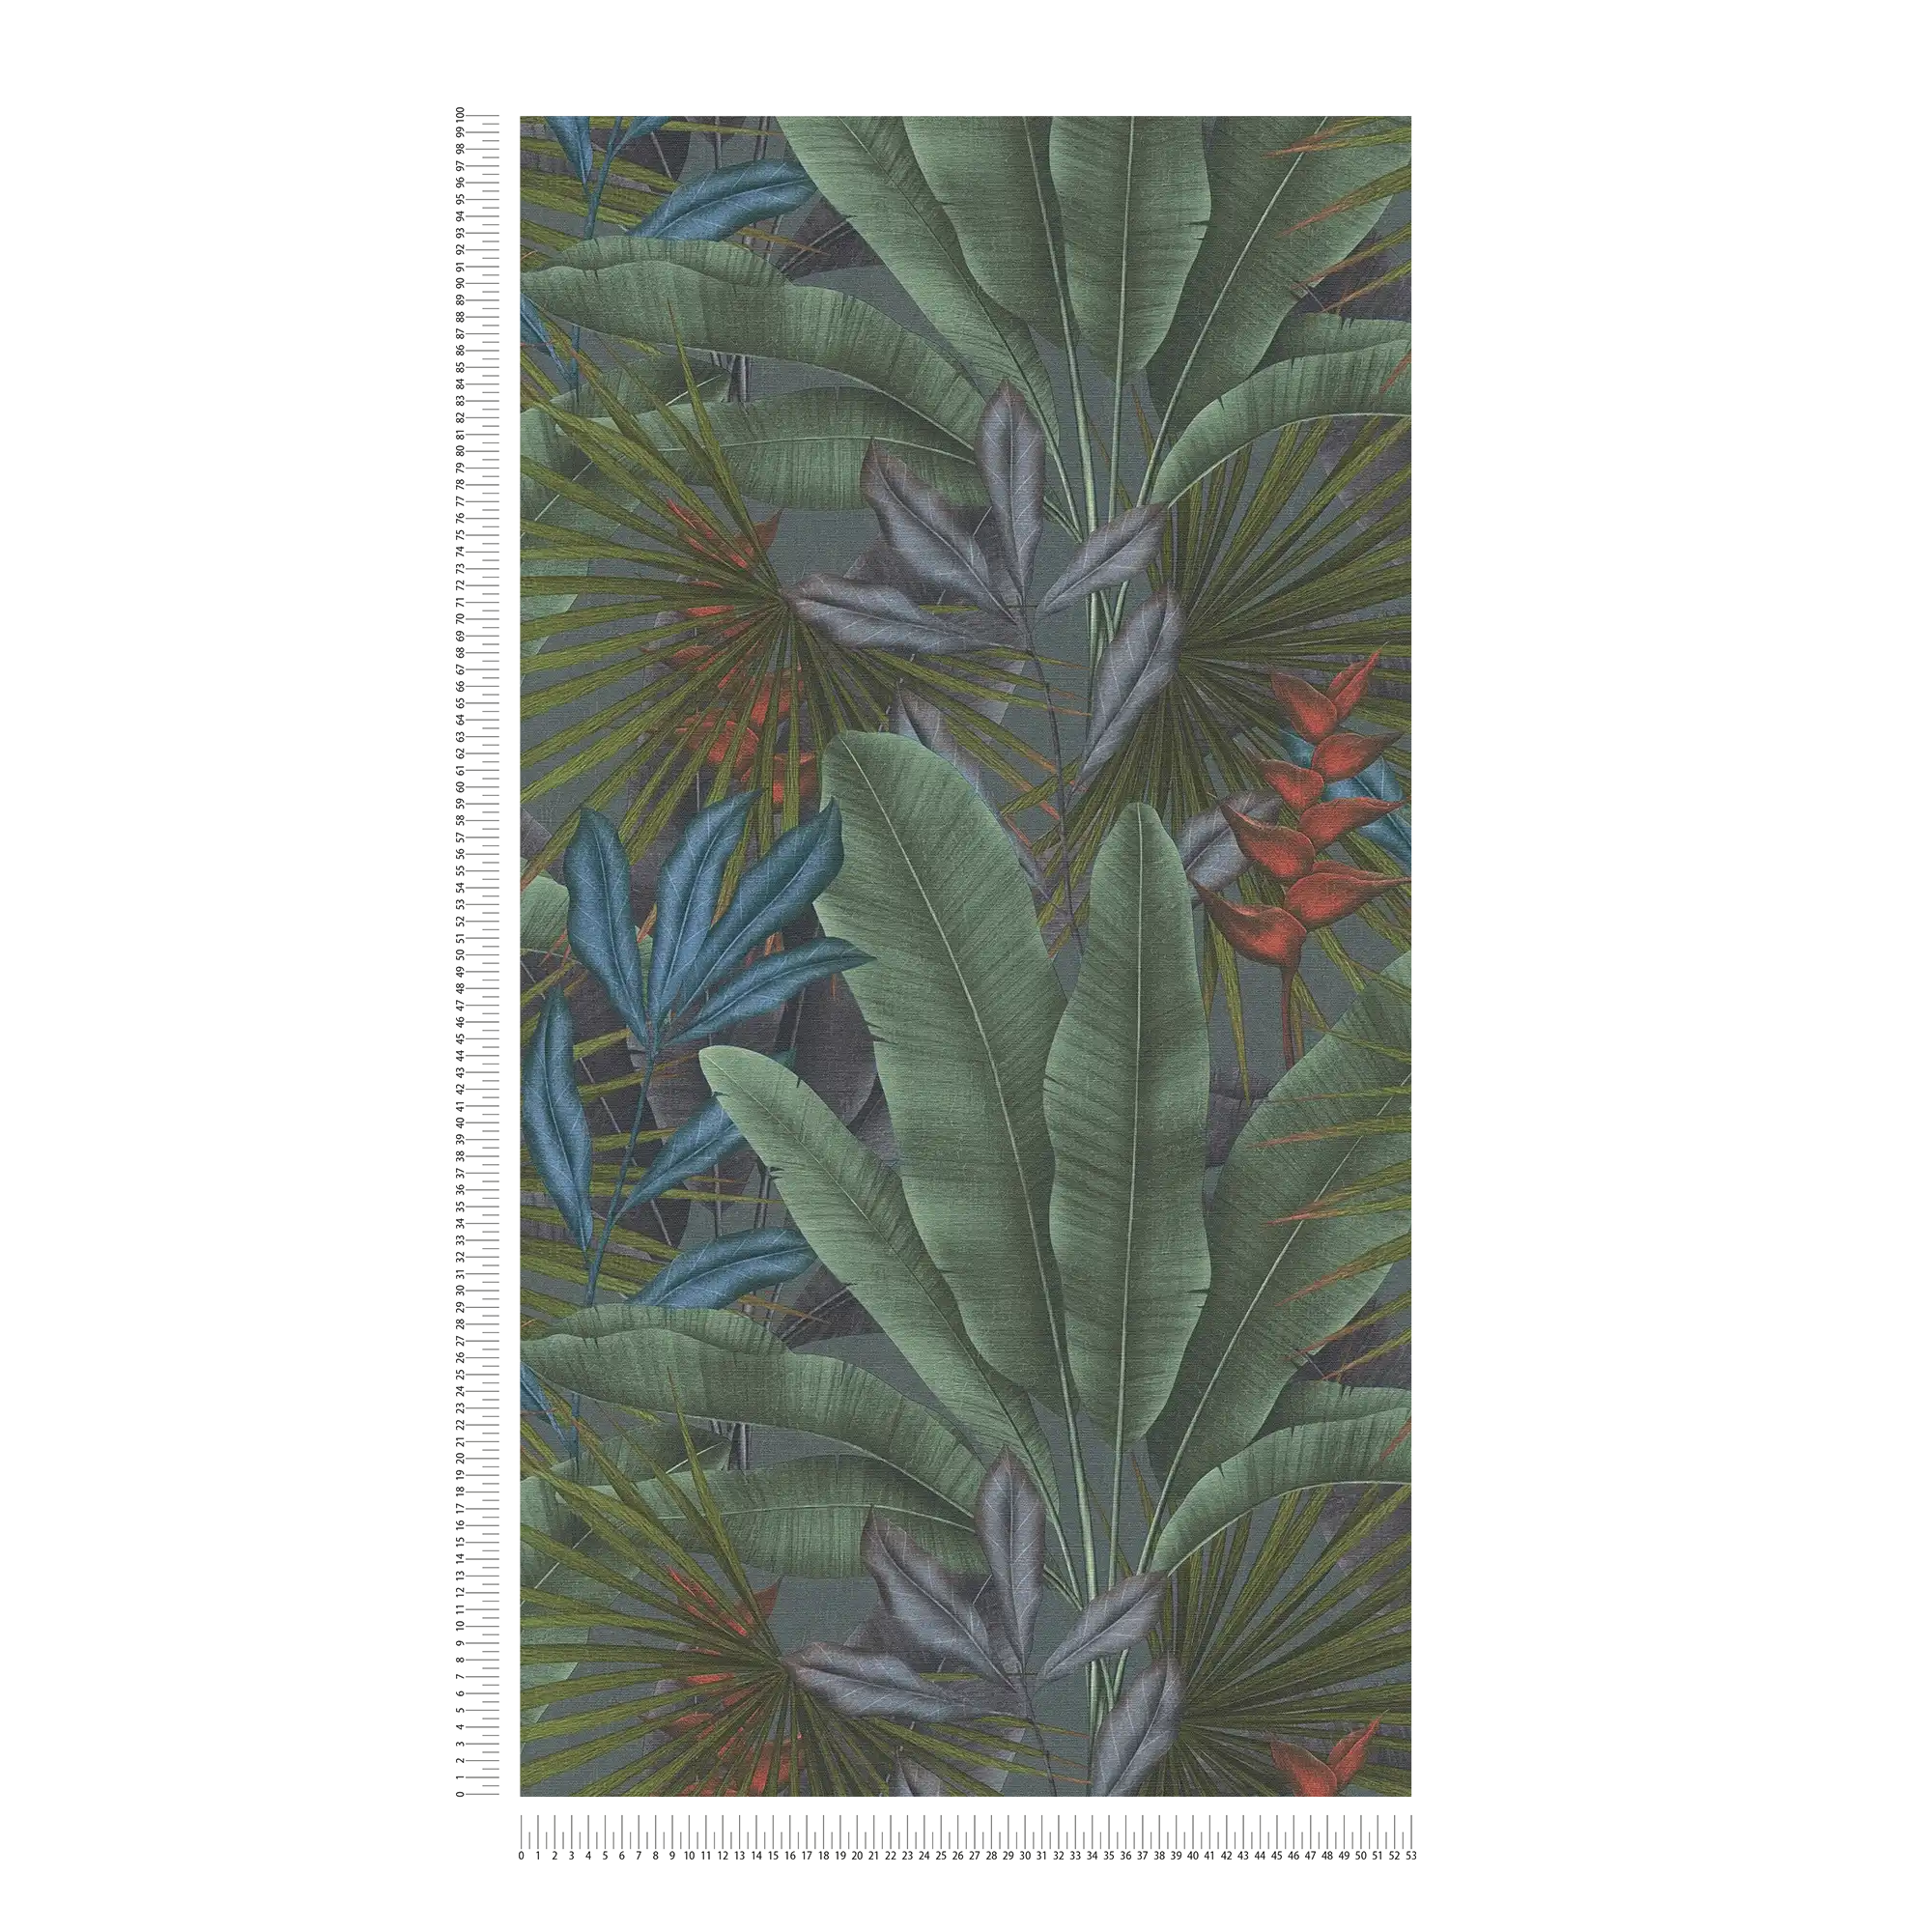             Vliesbehang met jungle bladmotief en kleurrijke accenten - grijs, groen, rood
        